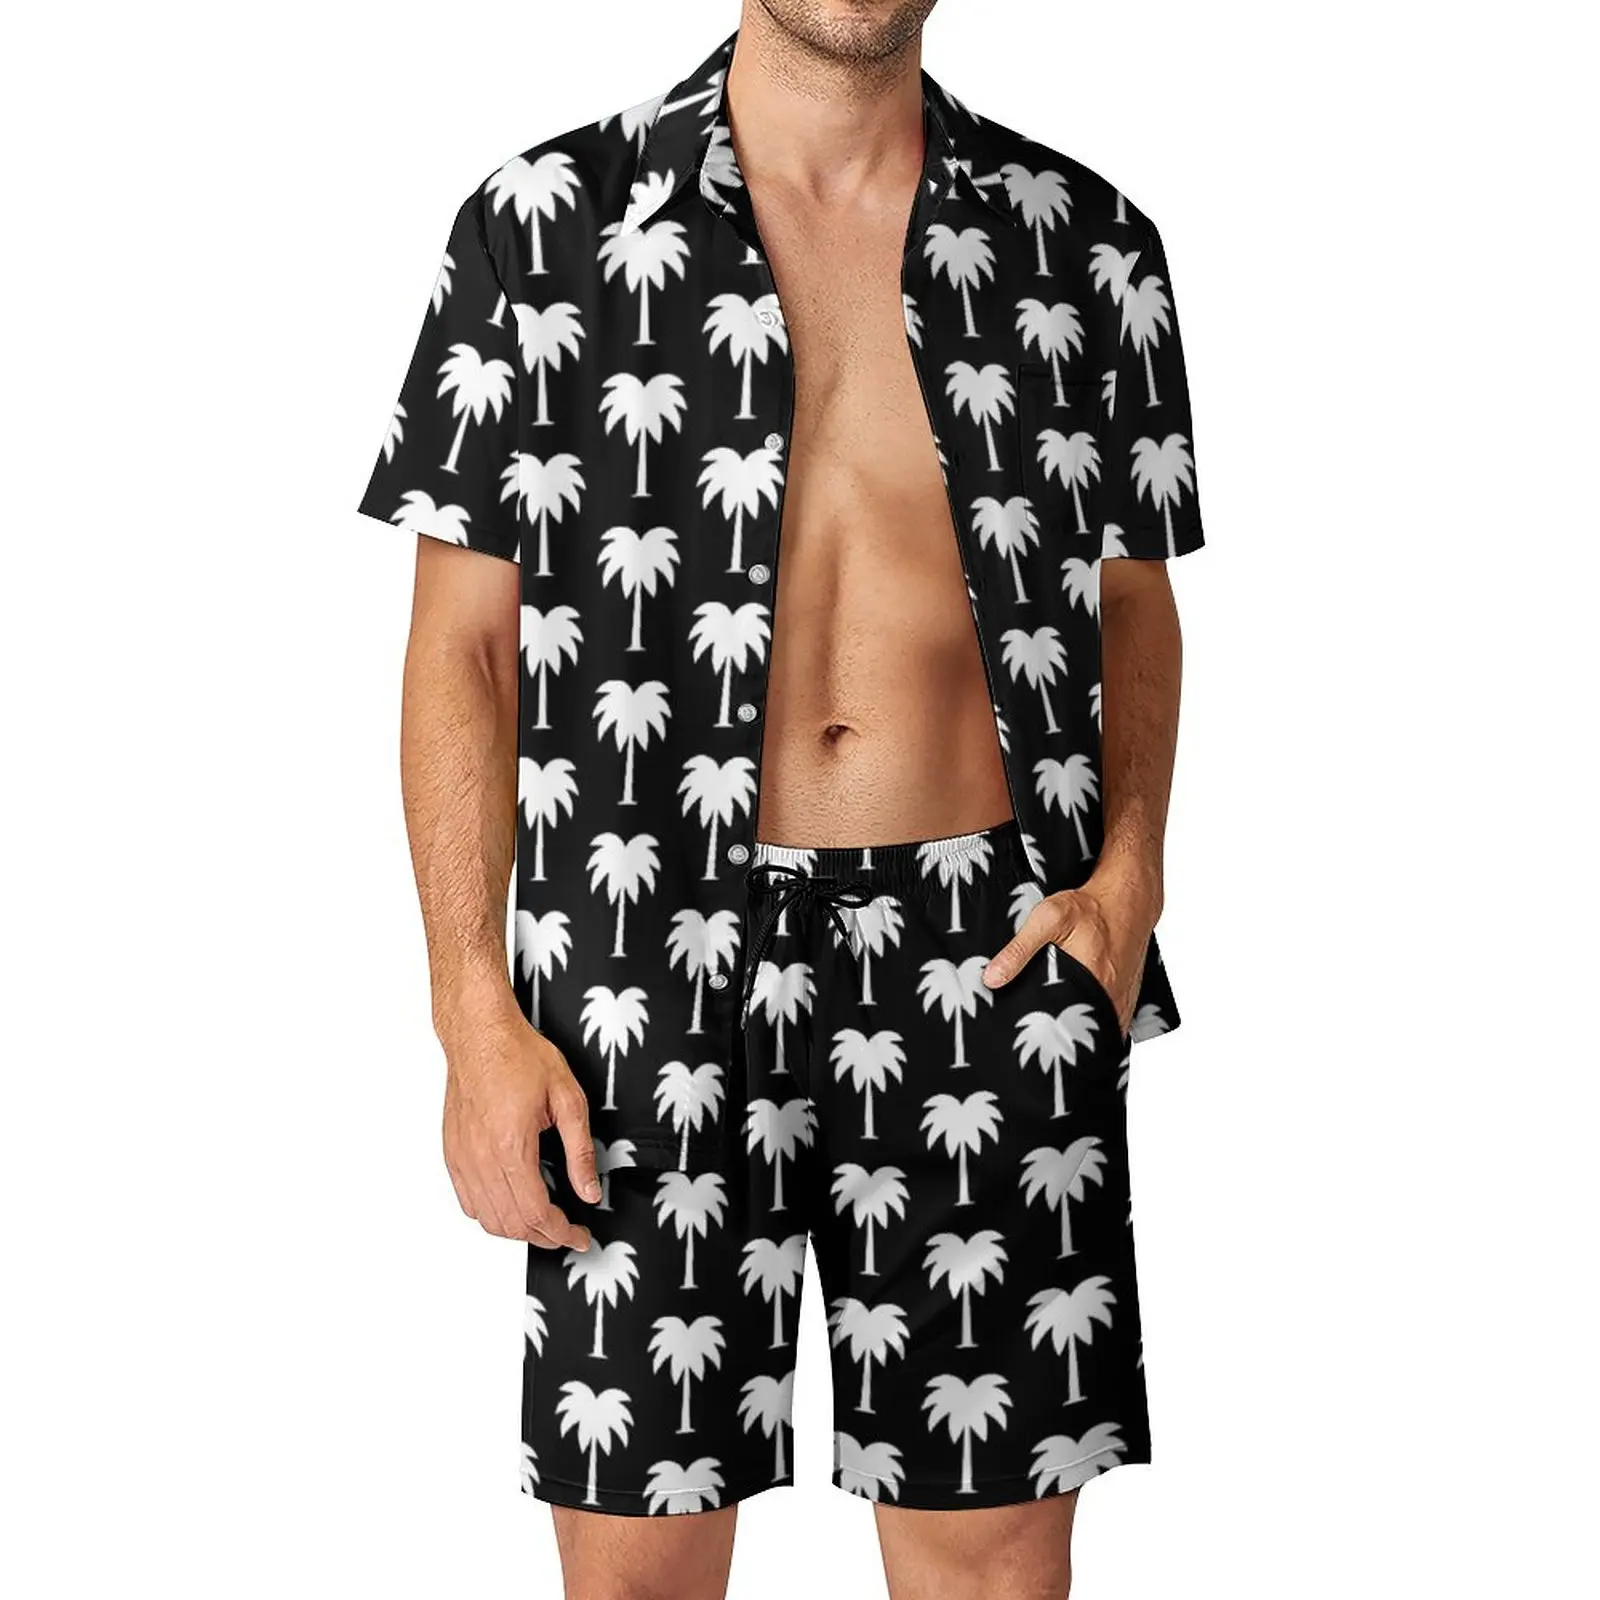 

Пляжный Мужской комплект с принтом тропическая Пальма Гавайская Повседневная рубашка комплект с короткими рукавами графические шорты летний пляжный костюм Женский 3XL